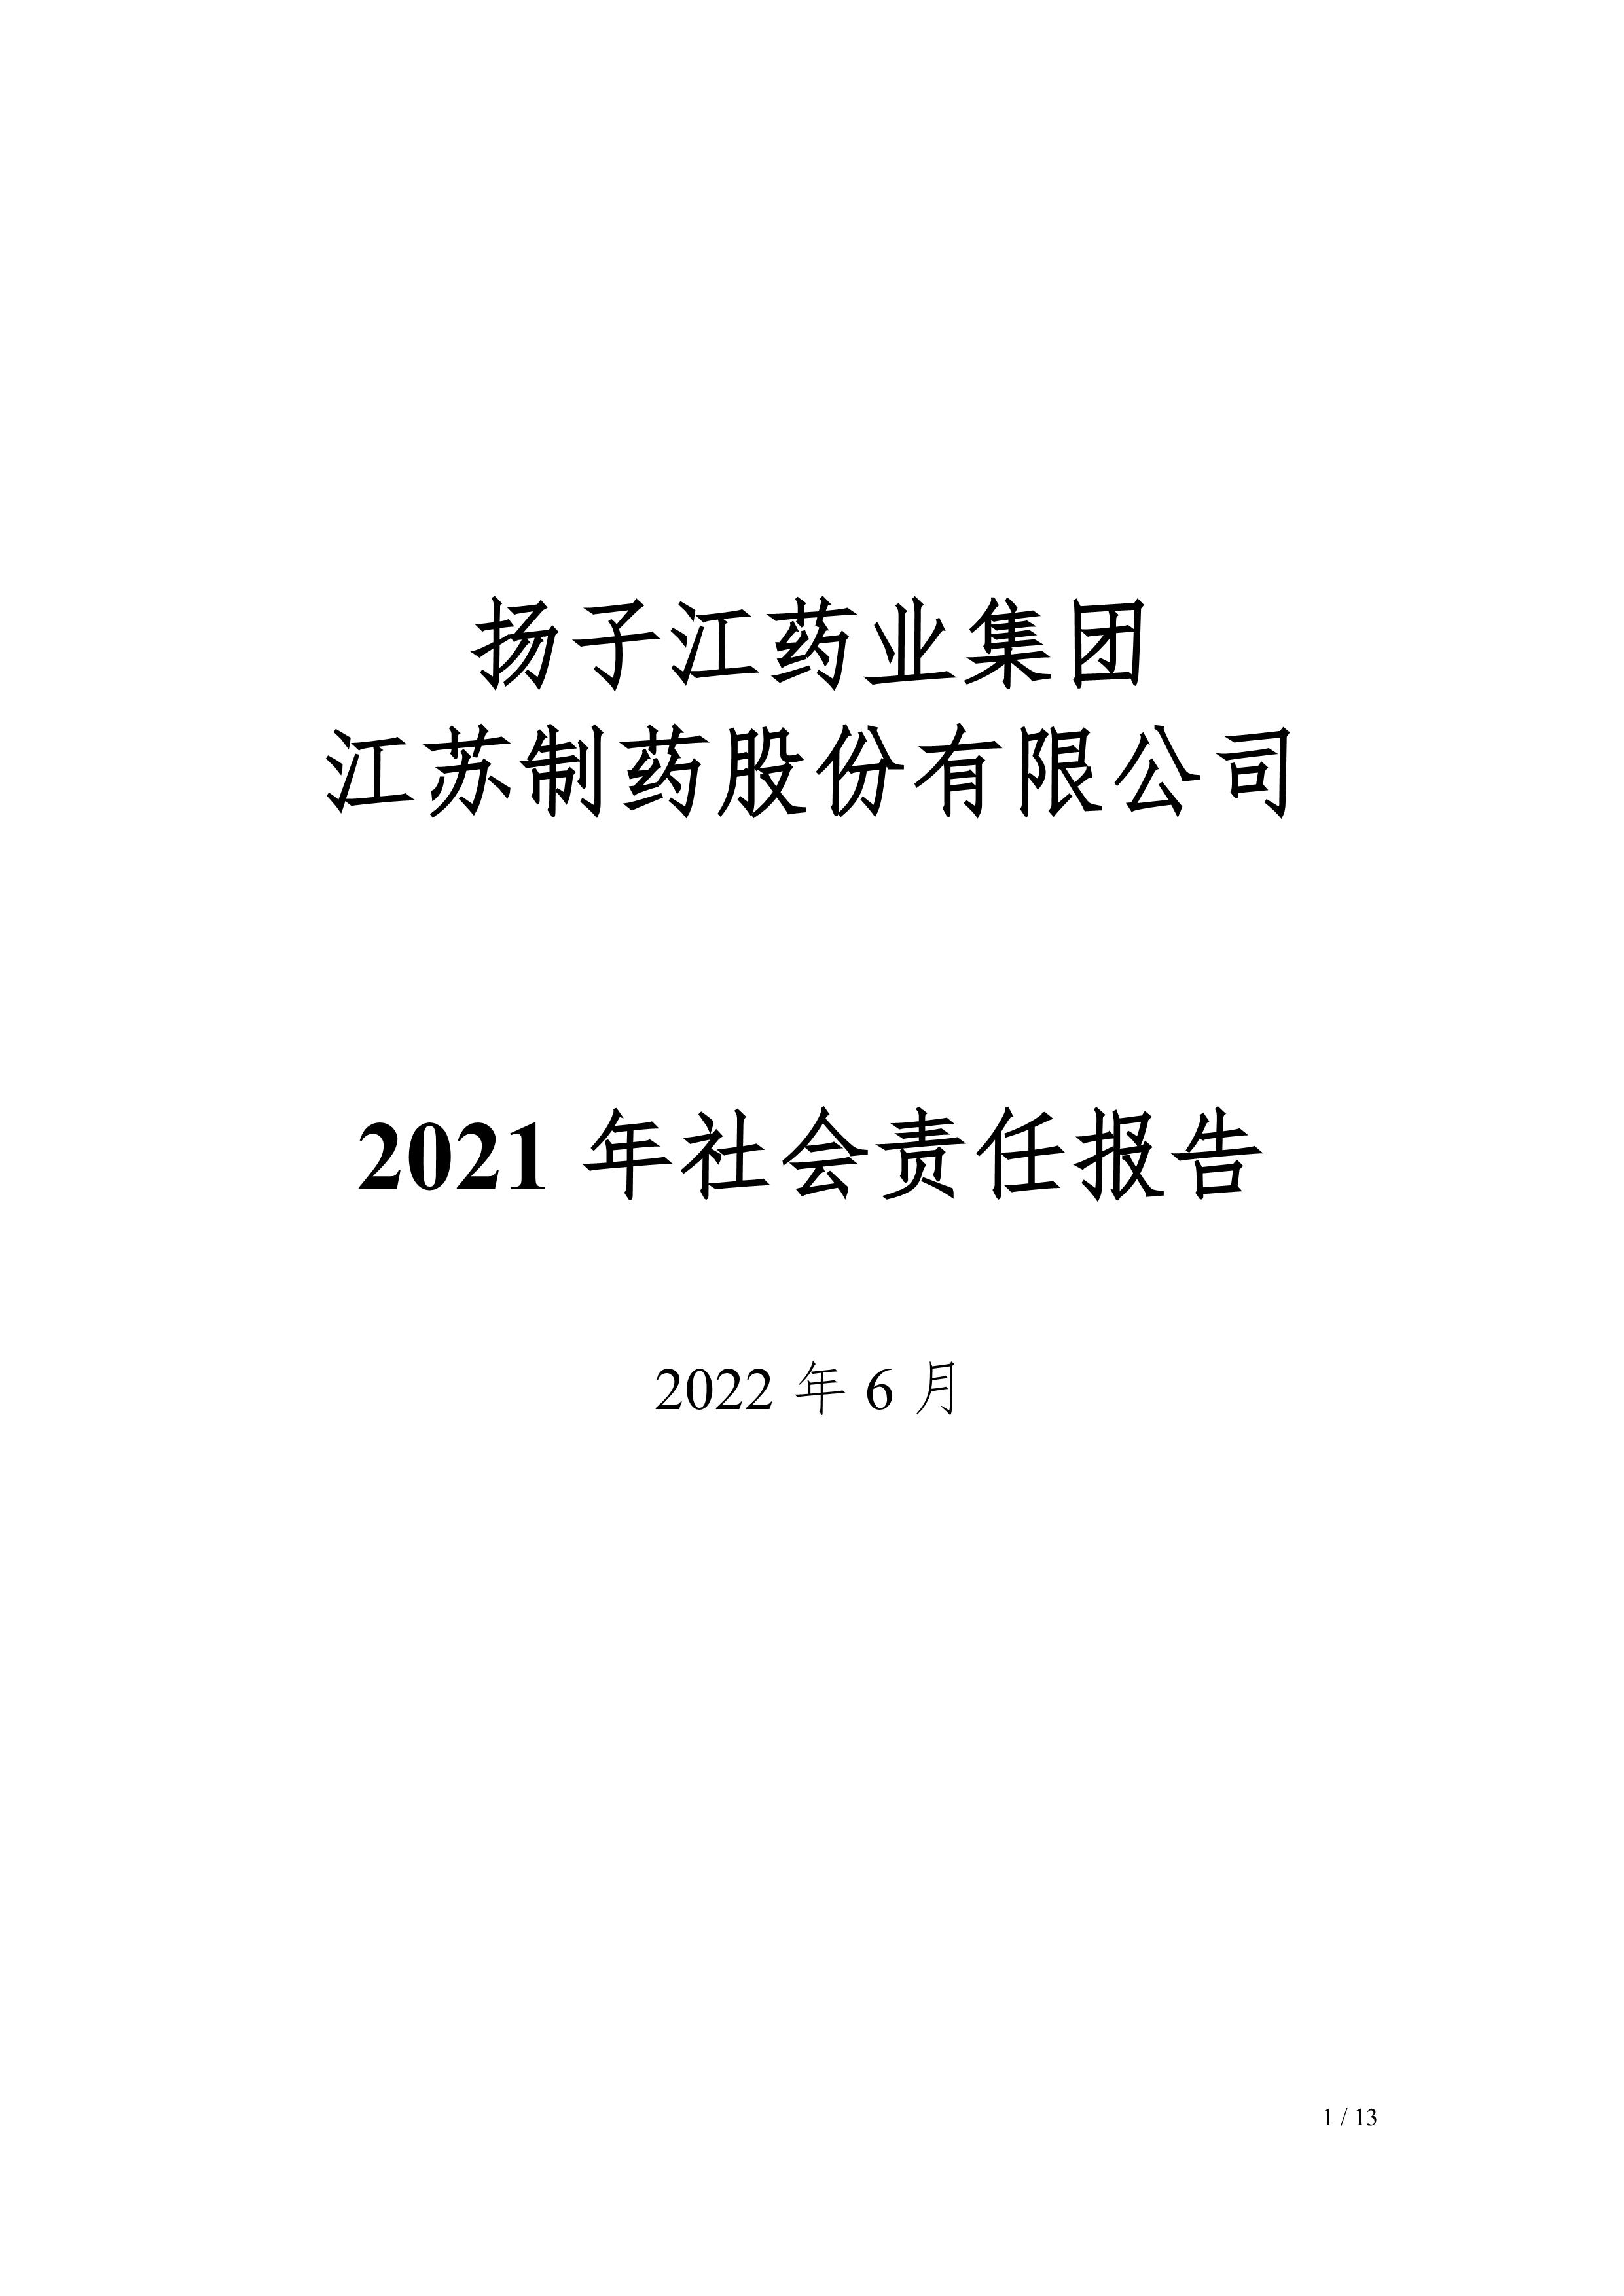 江苏制药股份有限公司2021年社会责任报告公示